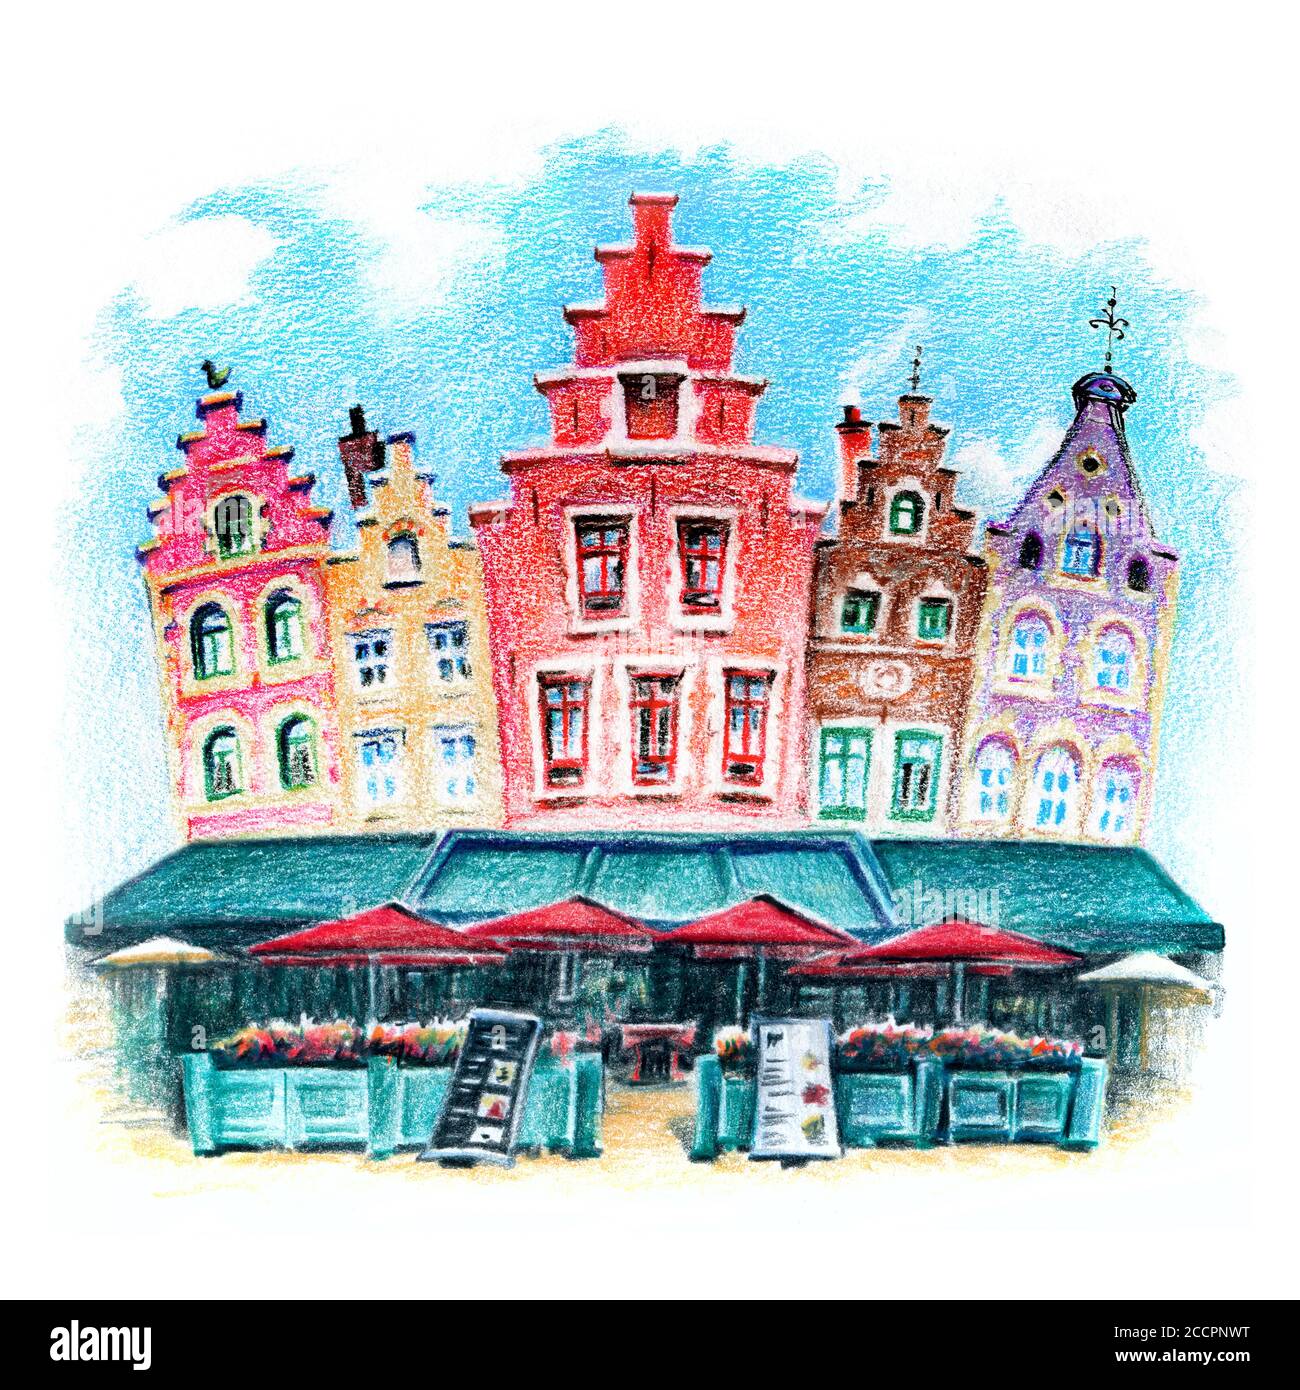 Croquis urbain de belles maisons médiévales sur la Grote Markt à Bruges, Belgique, Belgique. Dessin avec des crayons de couleur Banque D'Images